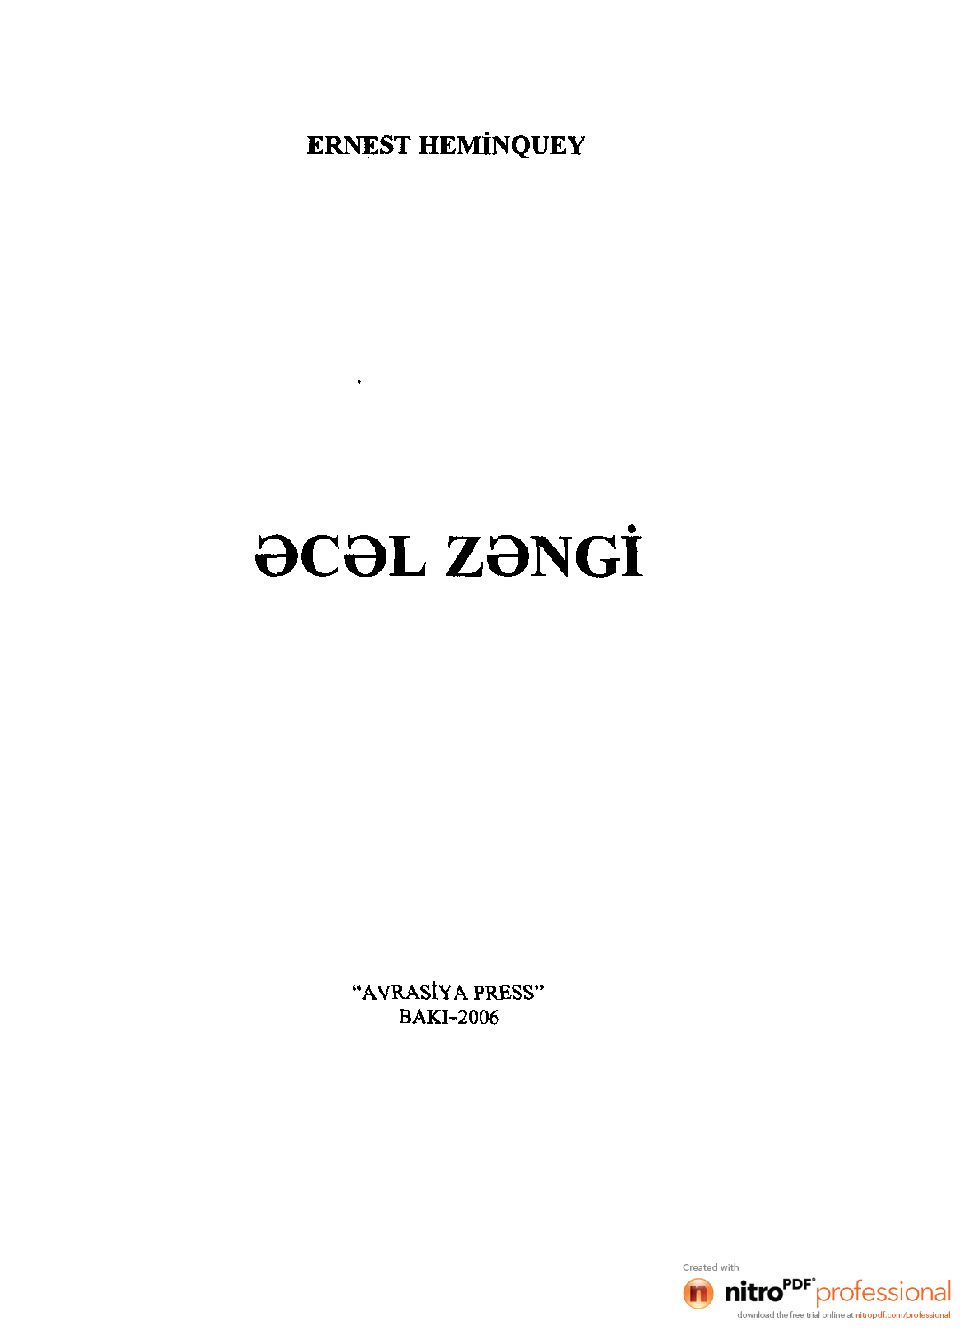 Ecel Zengi-Ernest Heminquey-Baki-2006-472s